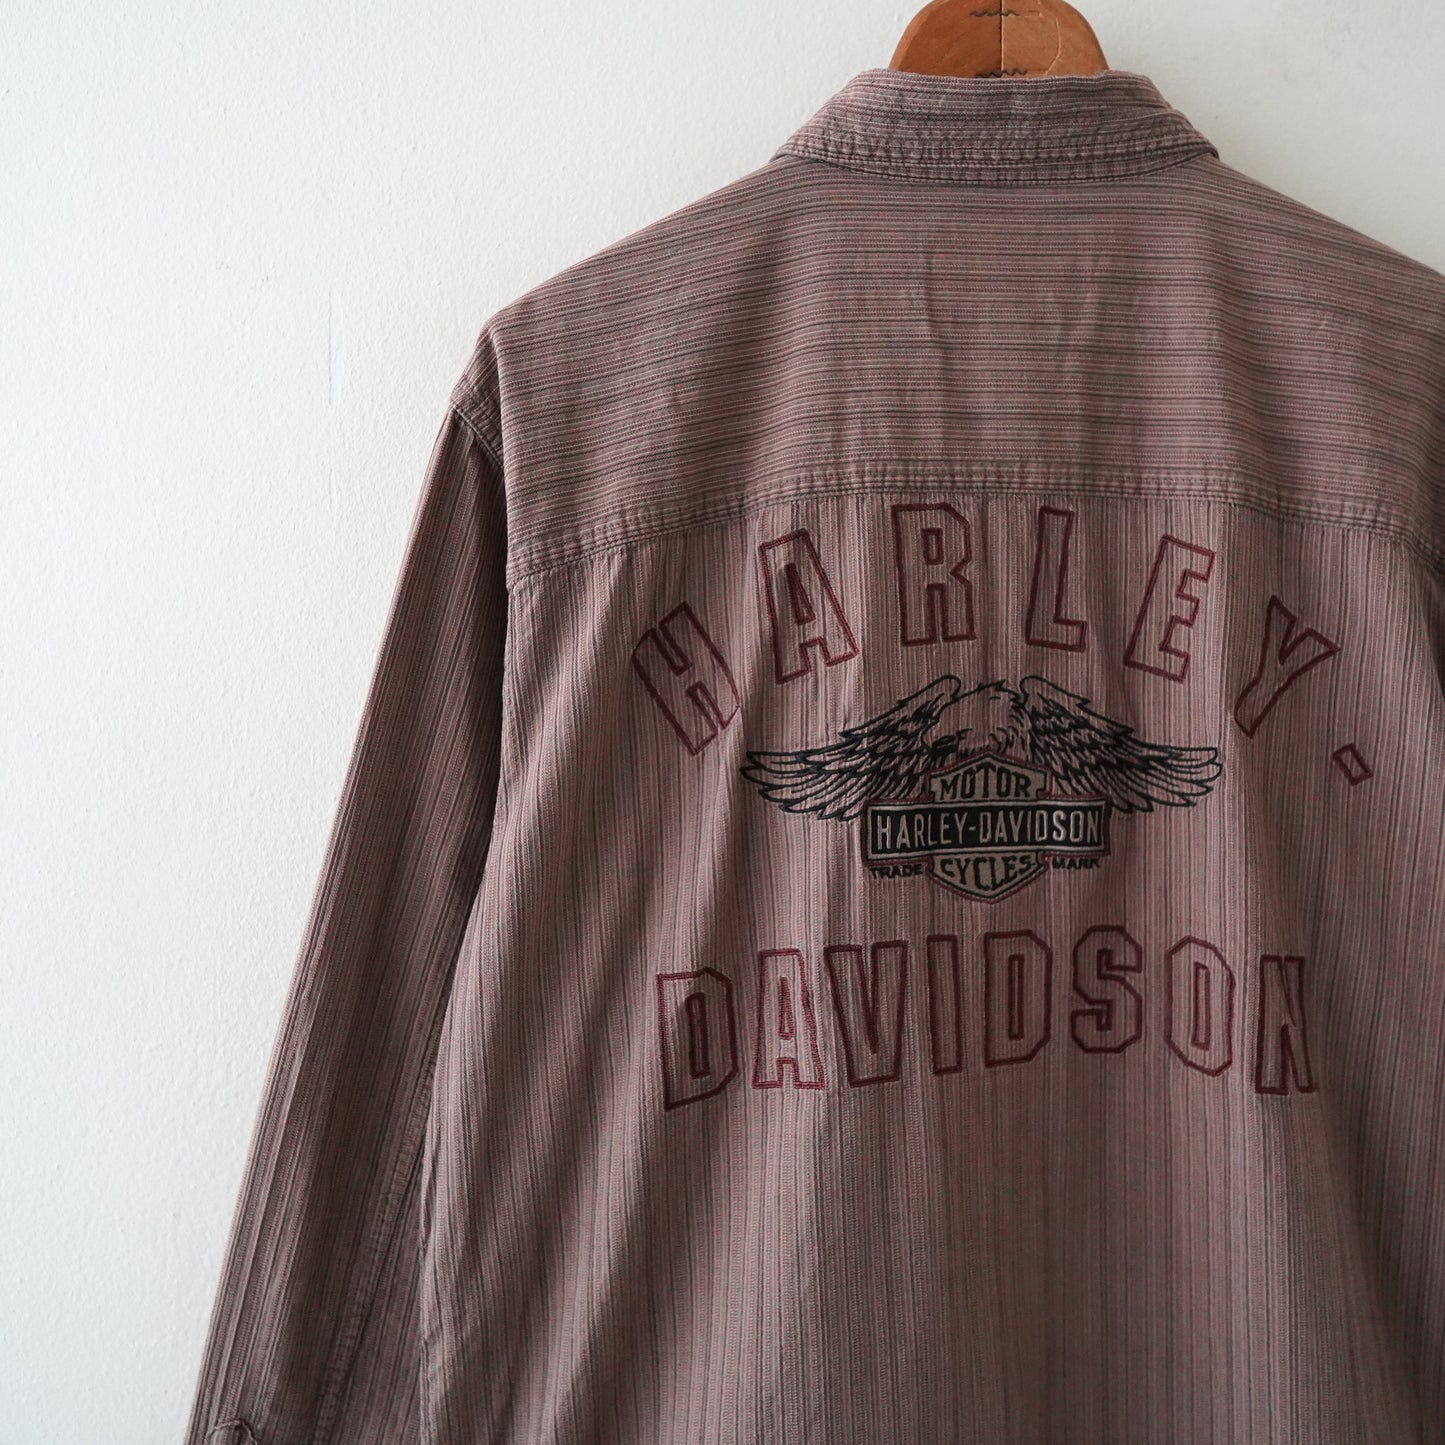 Harley Davison shirt